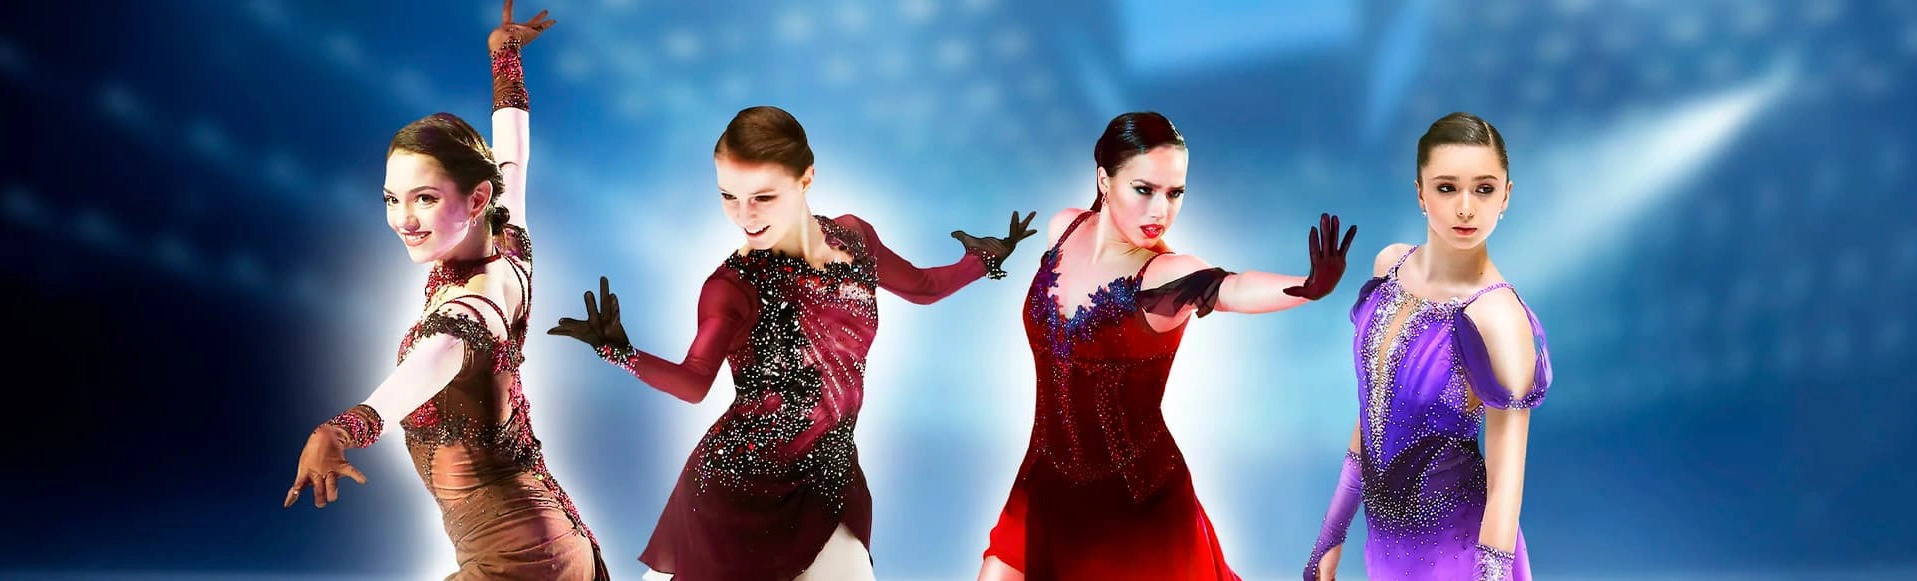 Шоу Team Tutberidze «Чемпионы на льду»  - Мир катания и танцев на льду в одном шоу!